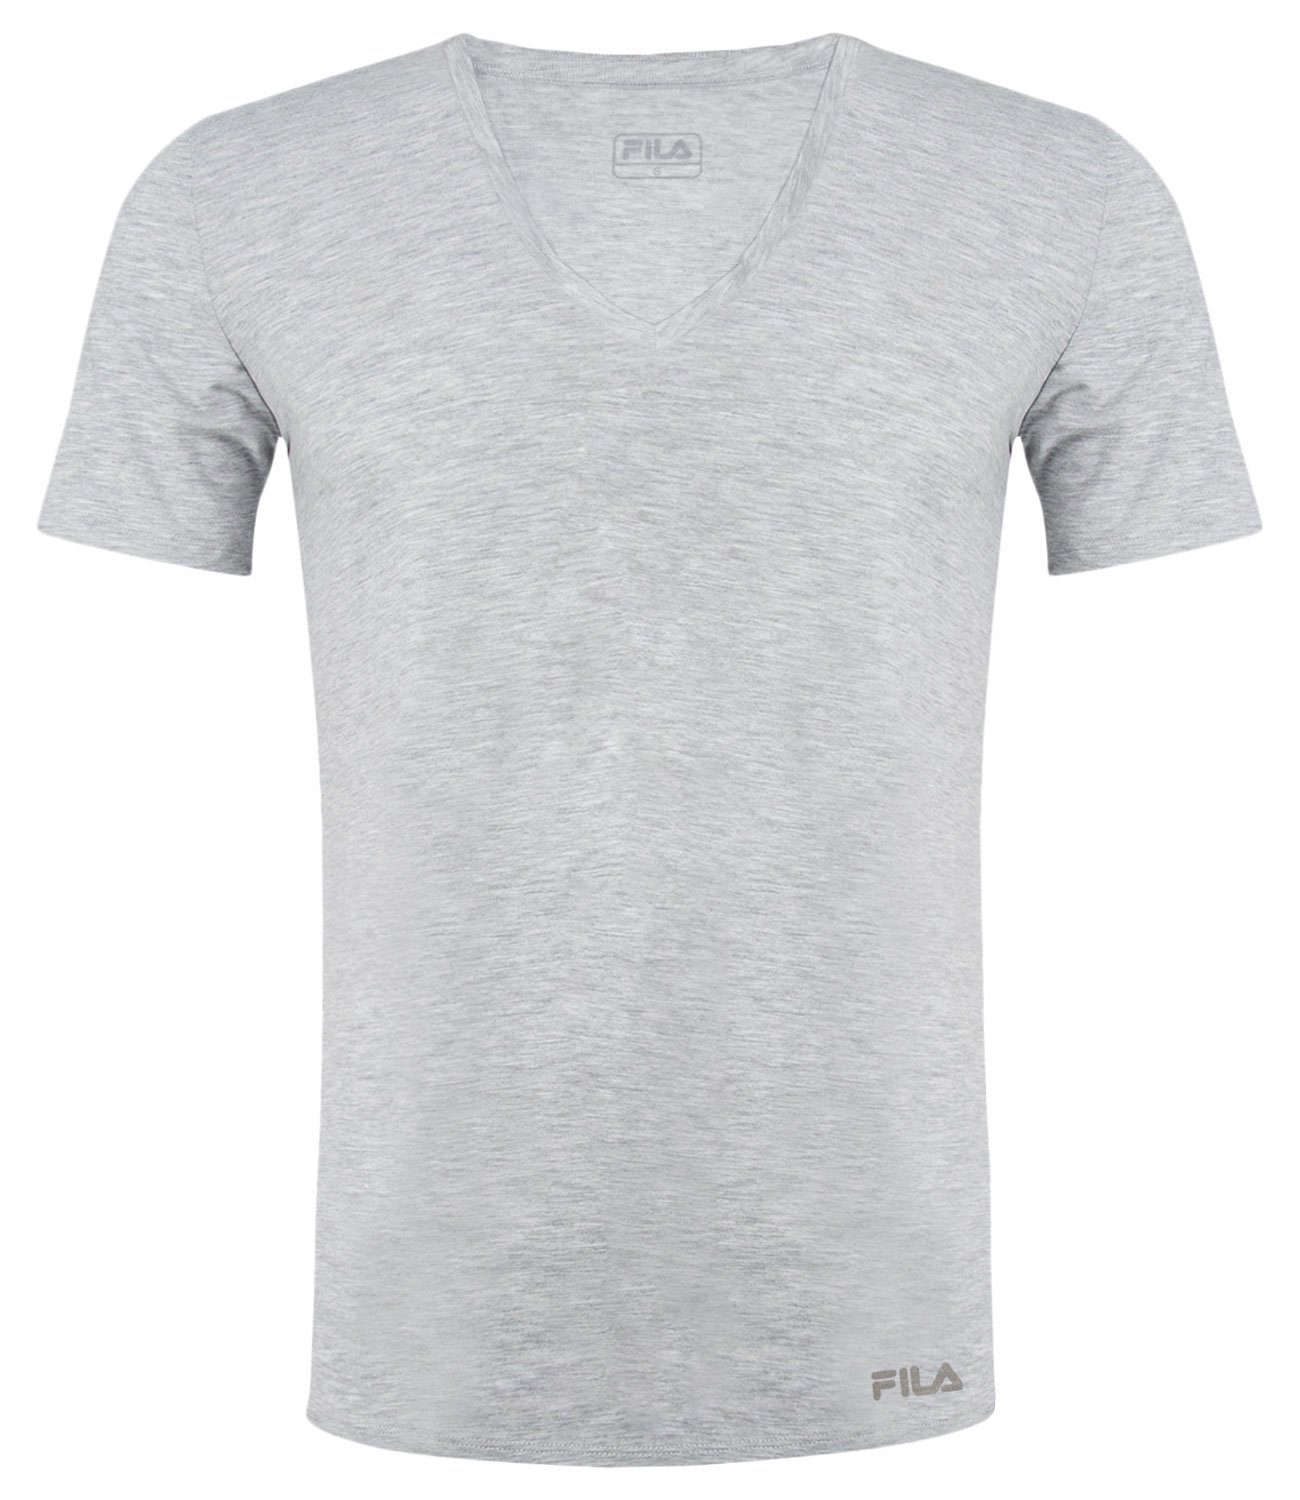 Baumwolljersey T-Shirt aus Fila 400 weichem V-Neck grey